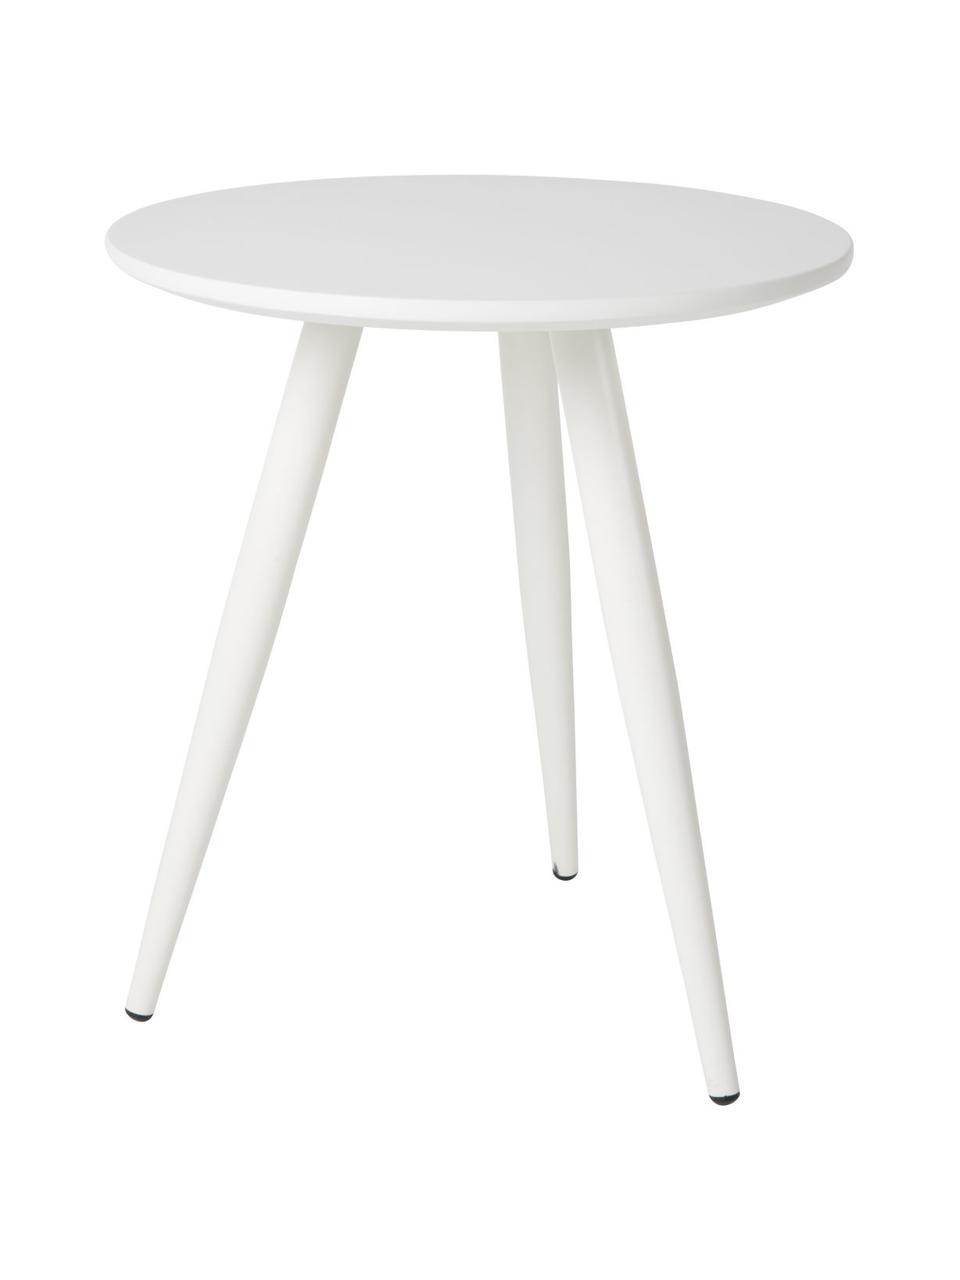 Beistelltisch 2er-Set Daven, Tischplatte: Mitteldichte Faserplatte , Beine: Metall, pulverbeschichtet, Weiß, Set mit verschiedenen Größen